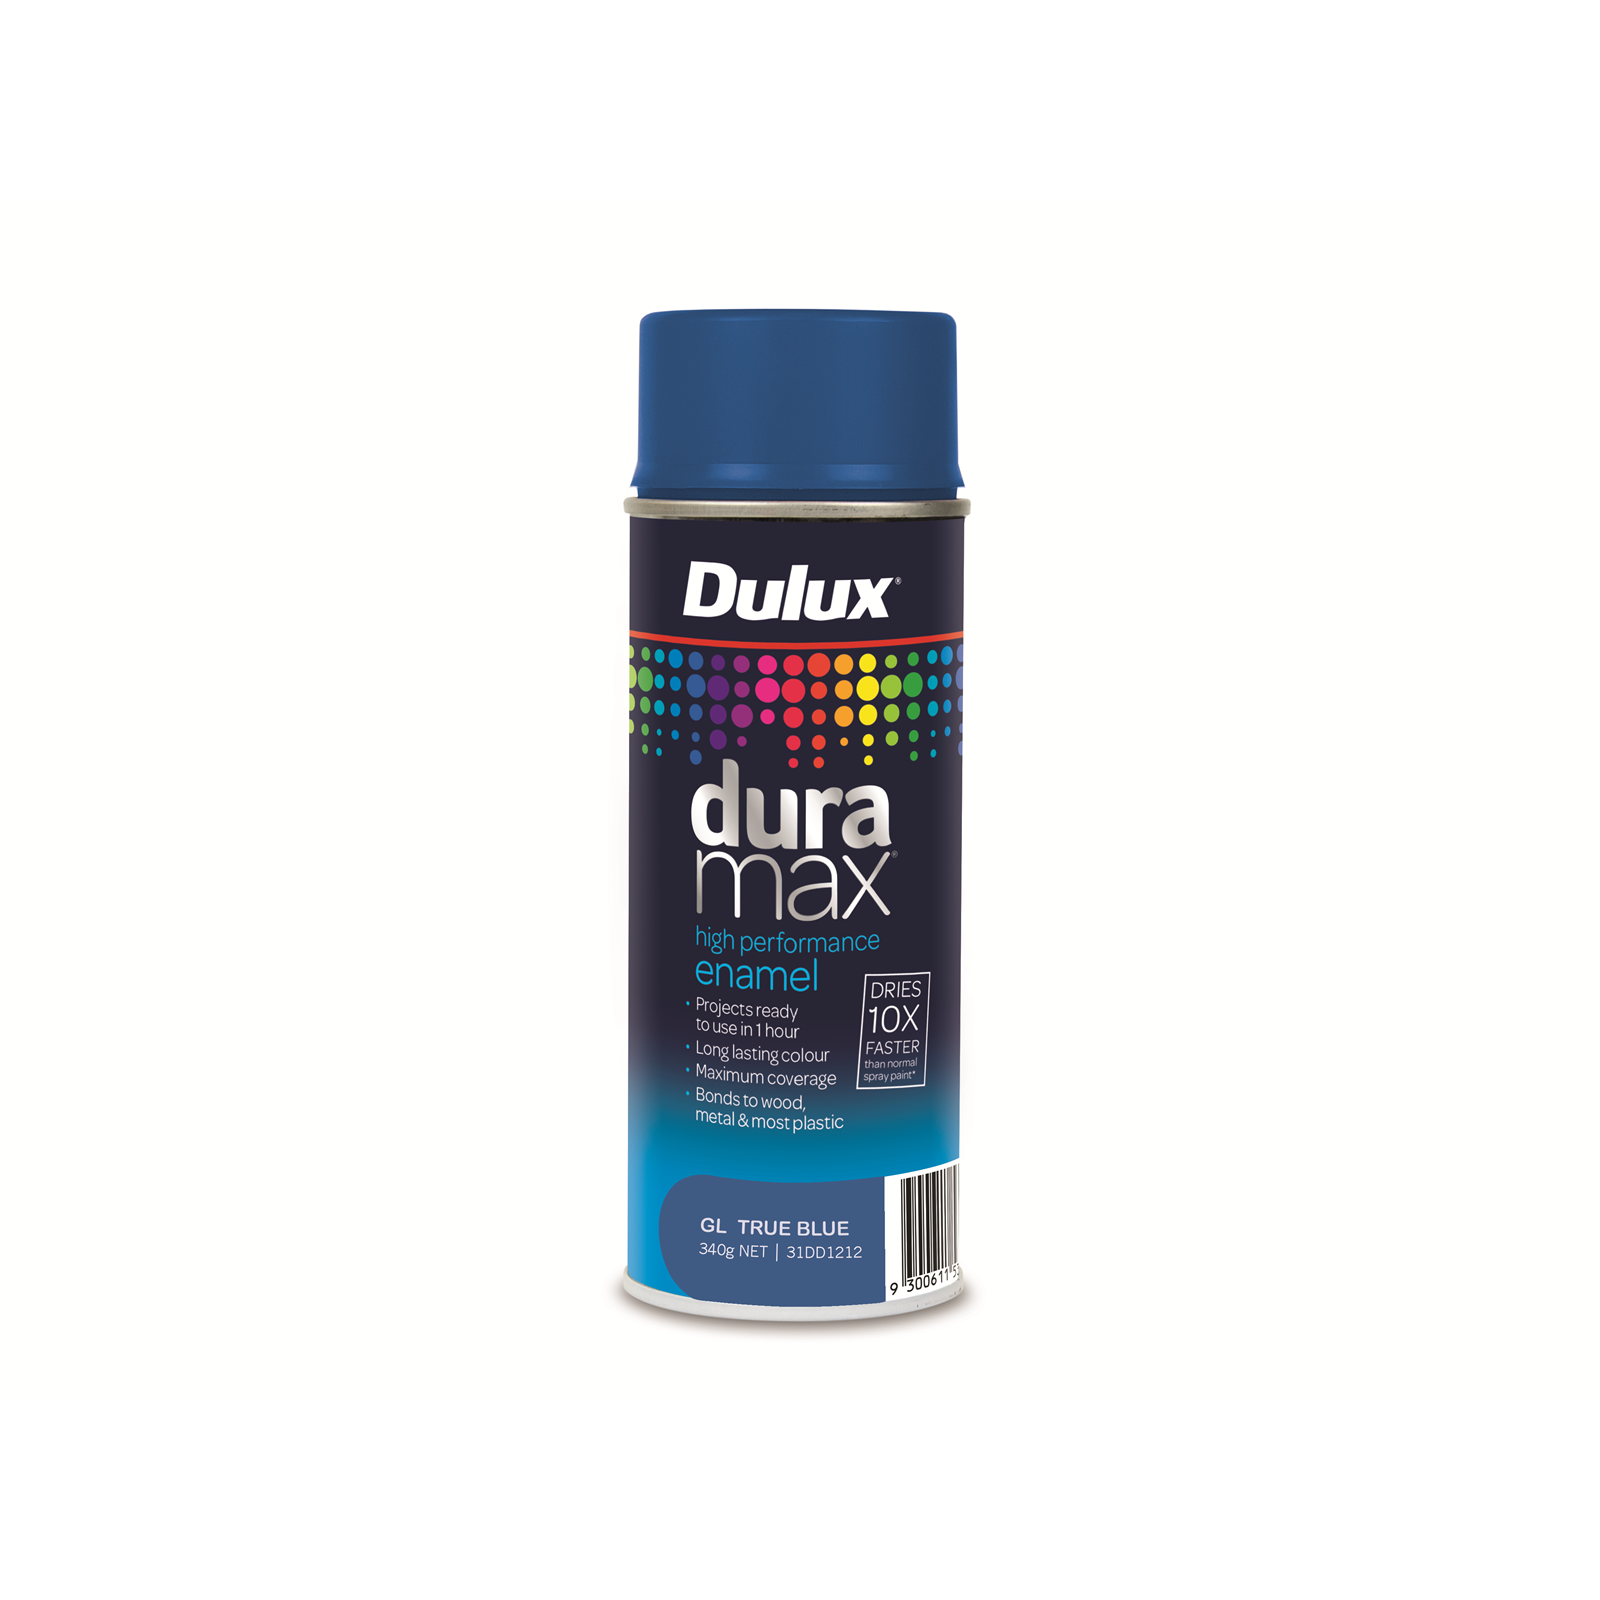 Dulux Duramax 340g Gloss True Blue Spray Paint